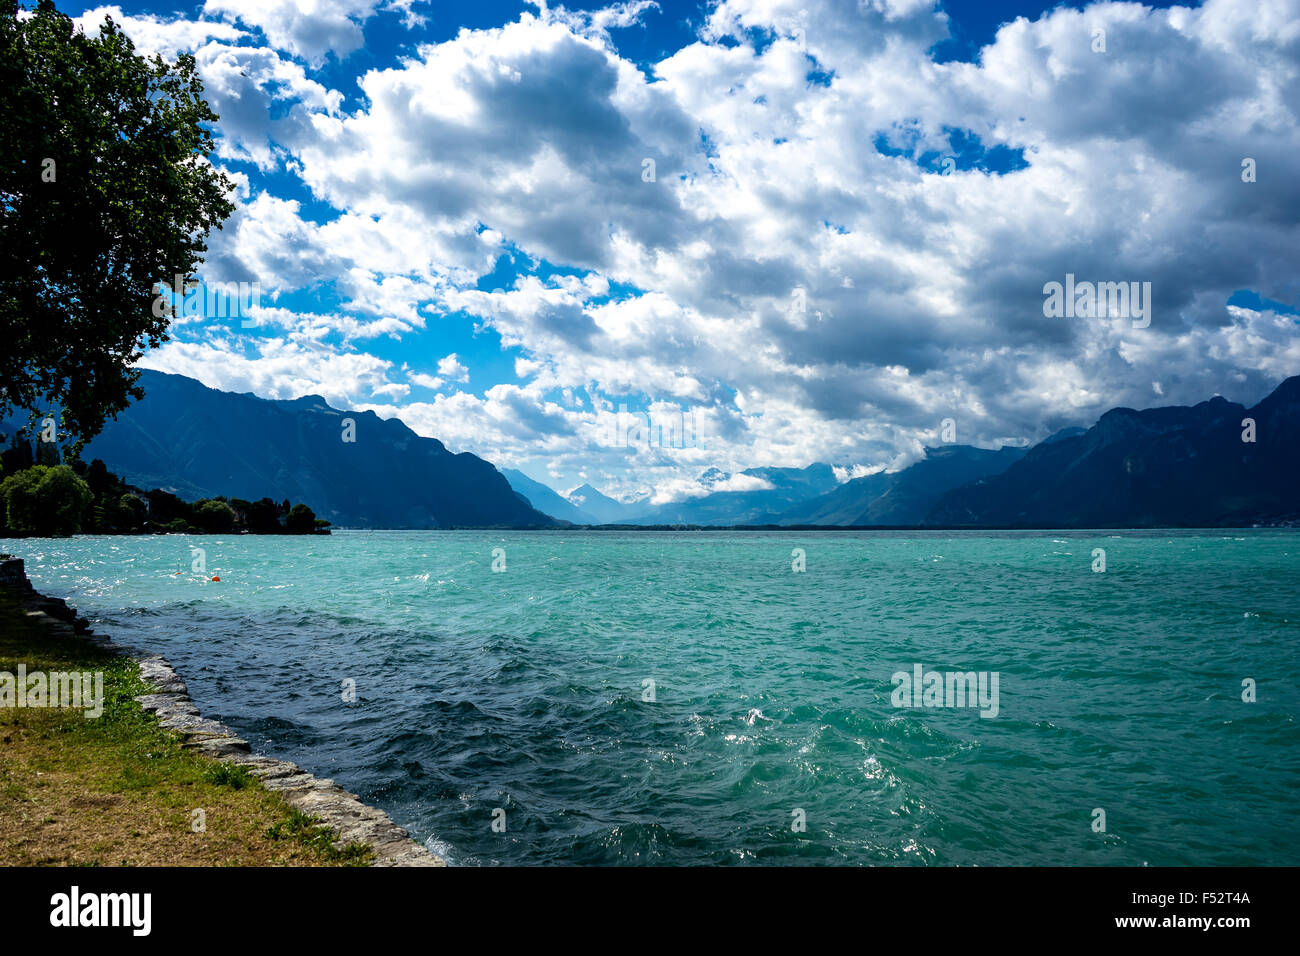 Lake Geneva in summer and the Swiss Alps beyond. Lake Geneva, Switzerland. Stock Photo